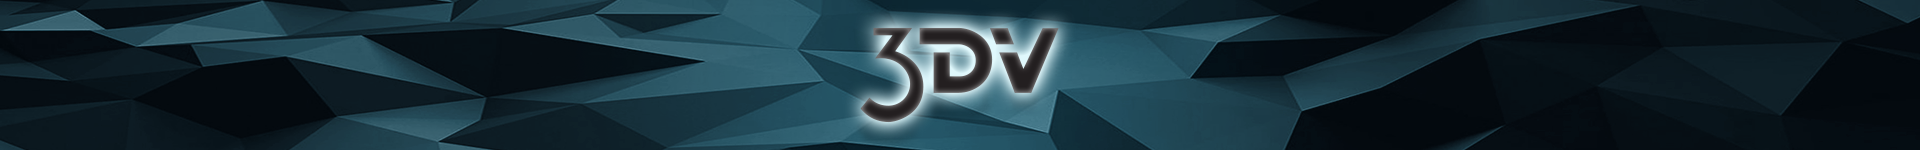 3DV Logo Header